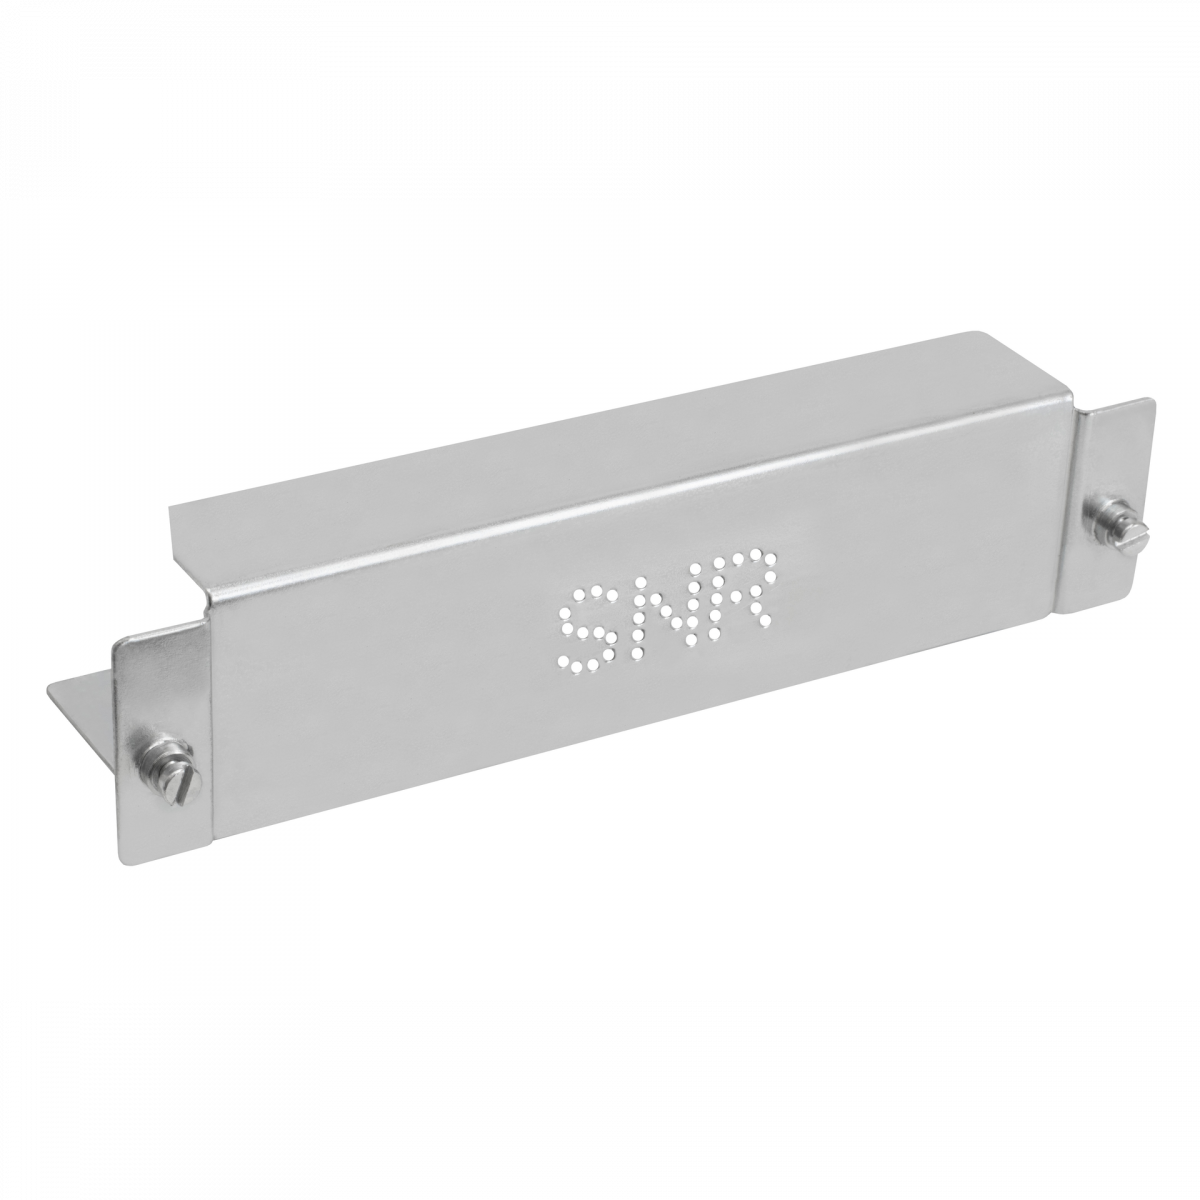 Заглушка SNR-BLNK-ASA5500-Z (гальваническое покрытие) для модуля расширения ASA5500 серии